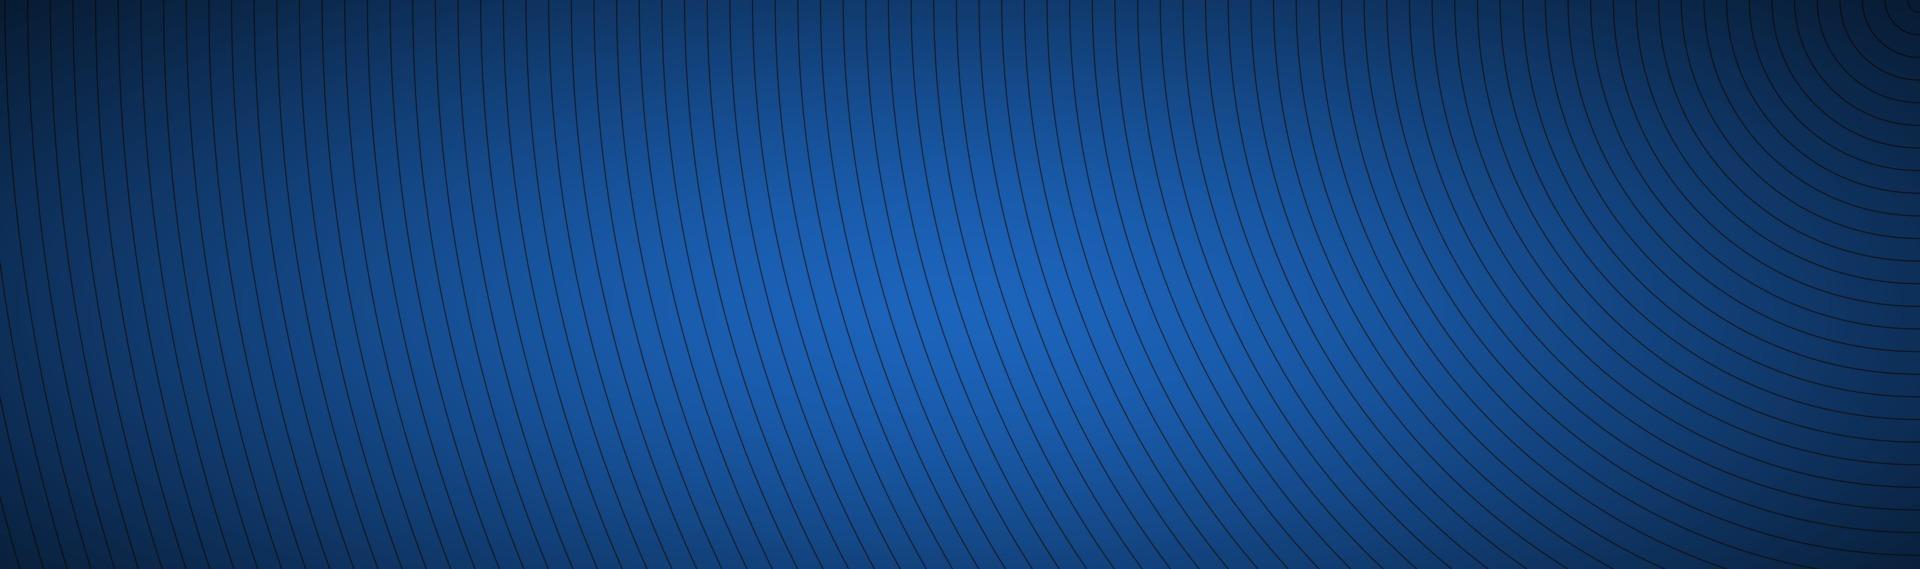 moderna intestazione astratta blu l'aspetto di linee circolari di banner in acciaio inossidabile su sfondo blu vettore